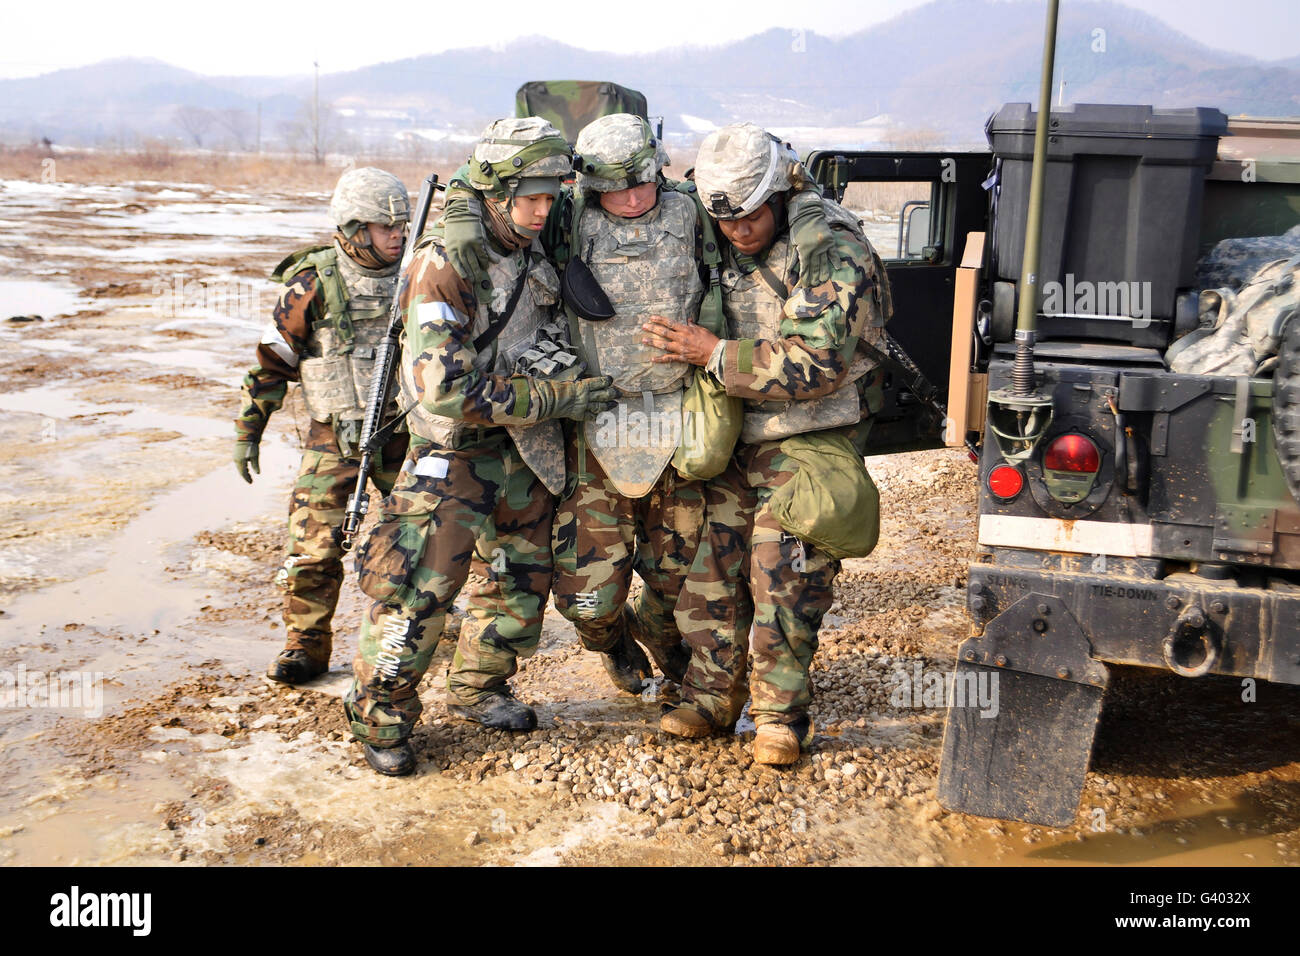 Des soldats effectuent une formation en évacuation médicale Yeoncheon, la Corée du Sud. Banque D'Images